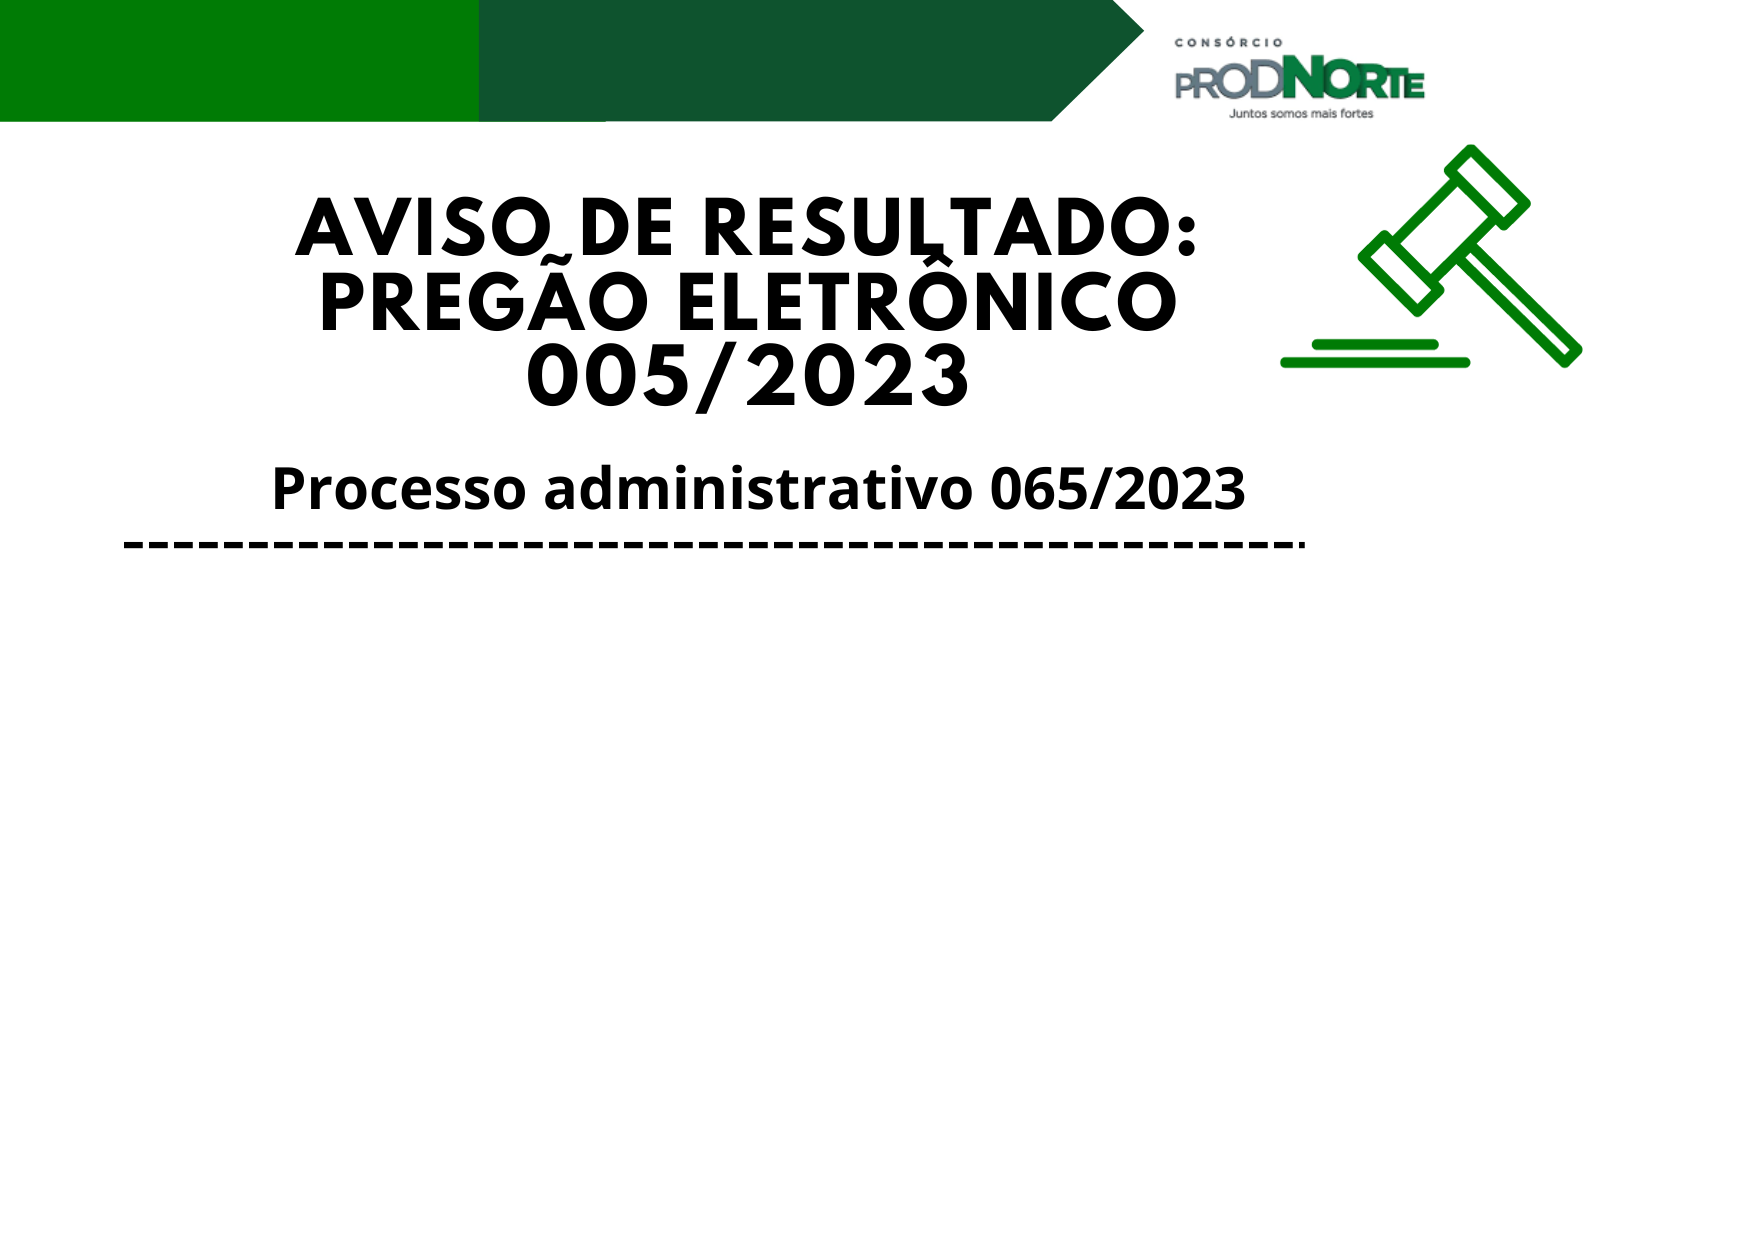 AVISO DE RESULTADO PREGÃO ELETRÔNICO 005/2023